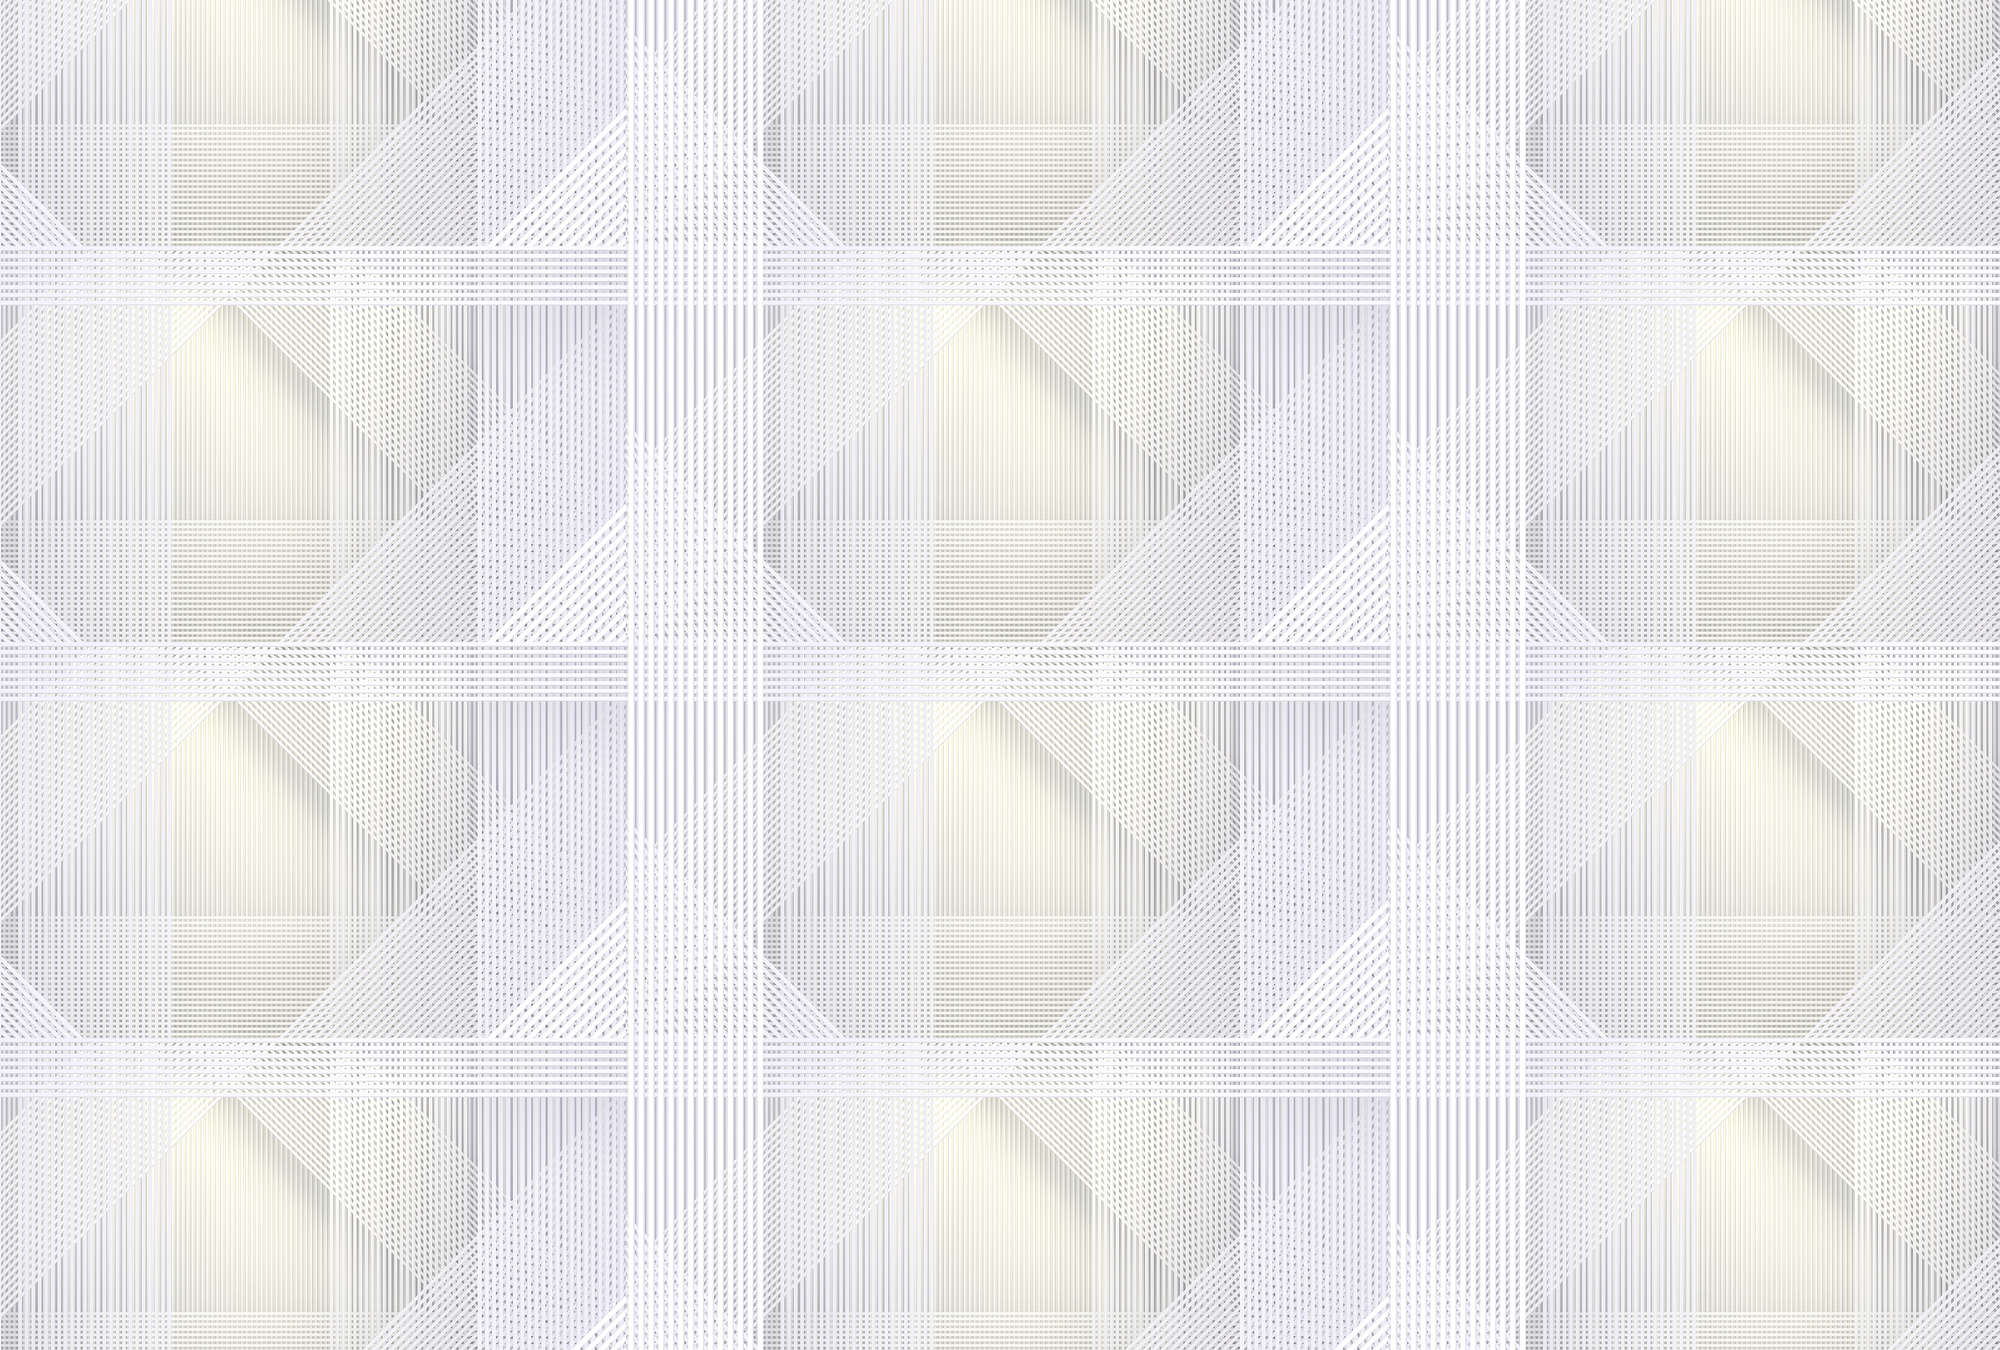             Strings 1 - Carta da parati a righe geometriche - giallo, grigio | texture tessuto non tessuto
        